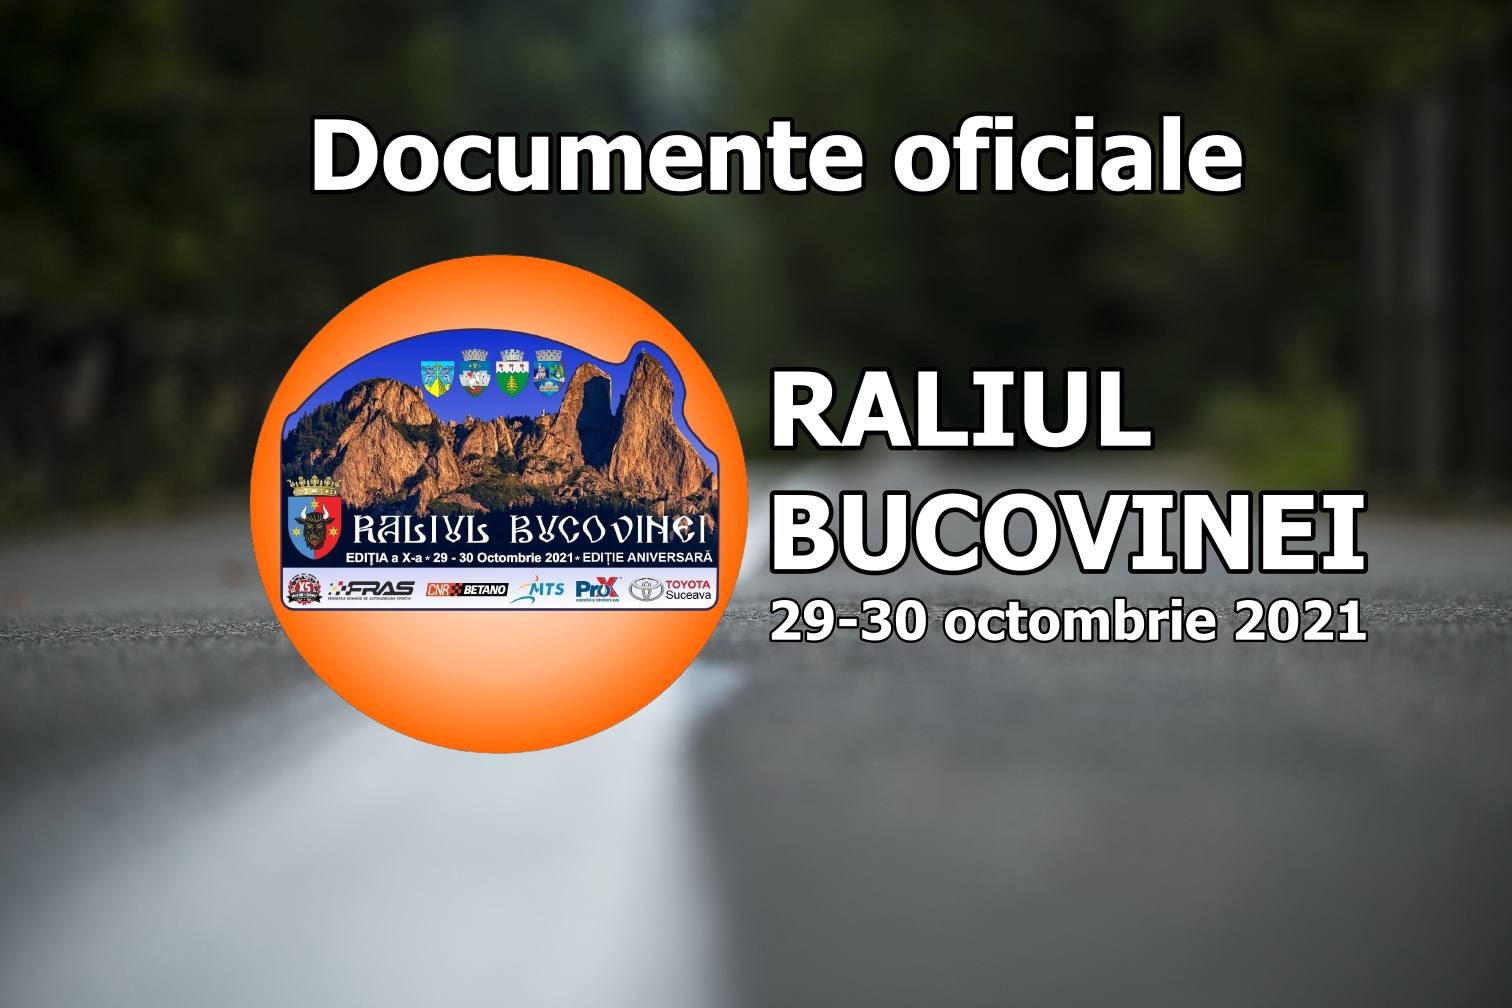 Raliul Bucovinei 2021 – Documente oficiale